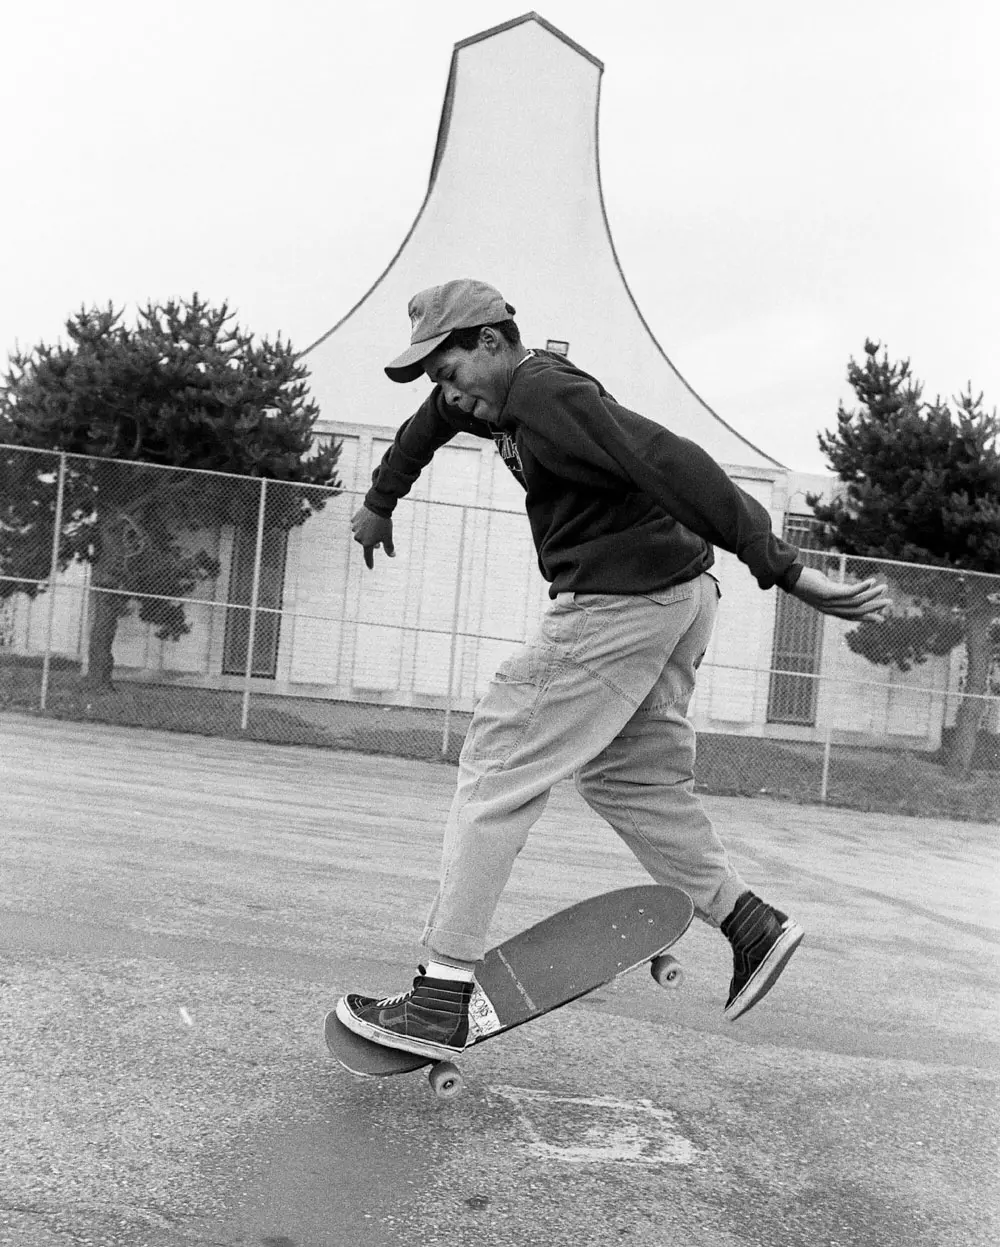 O No Comply, manobra realizada sem colocar as mãos no skate, de Ray Barbee revolucionou o esporte. (Imagem: Ogden)